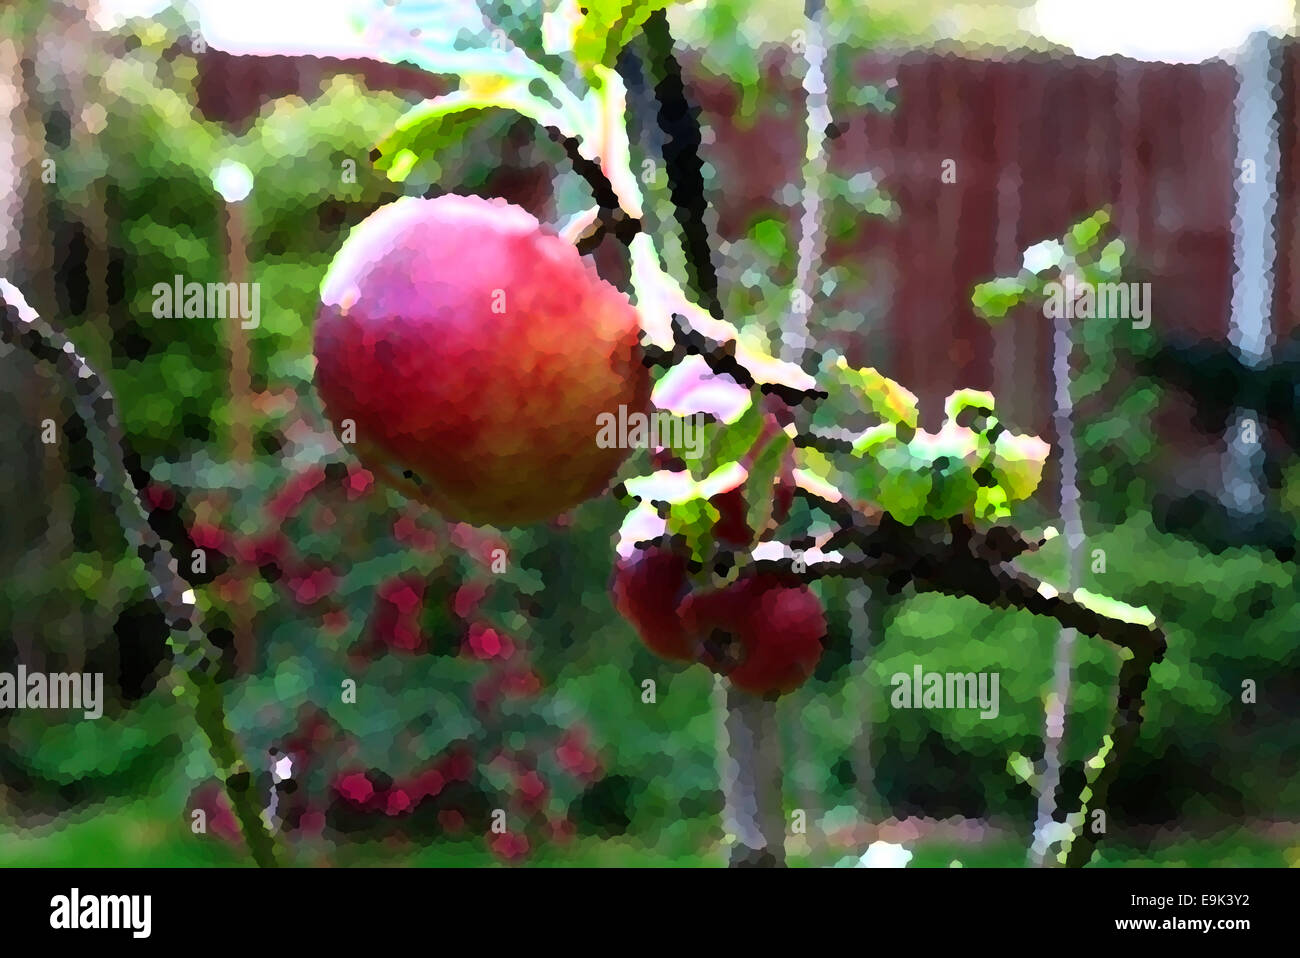 Photo de red devil les pommes avec de la peinture sur Banque D'Images